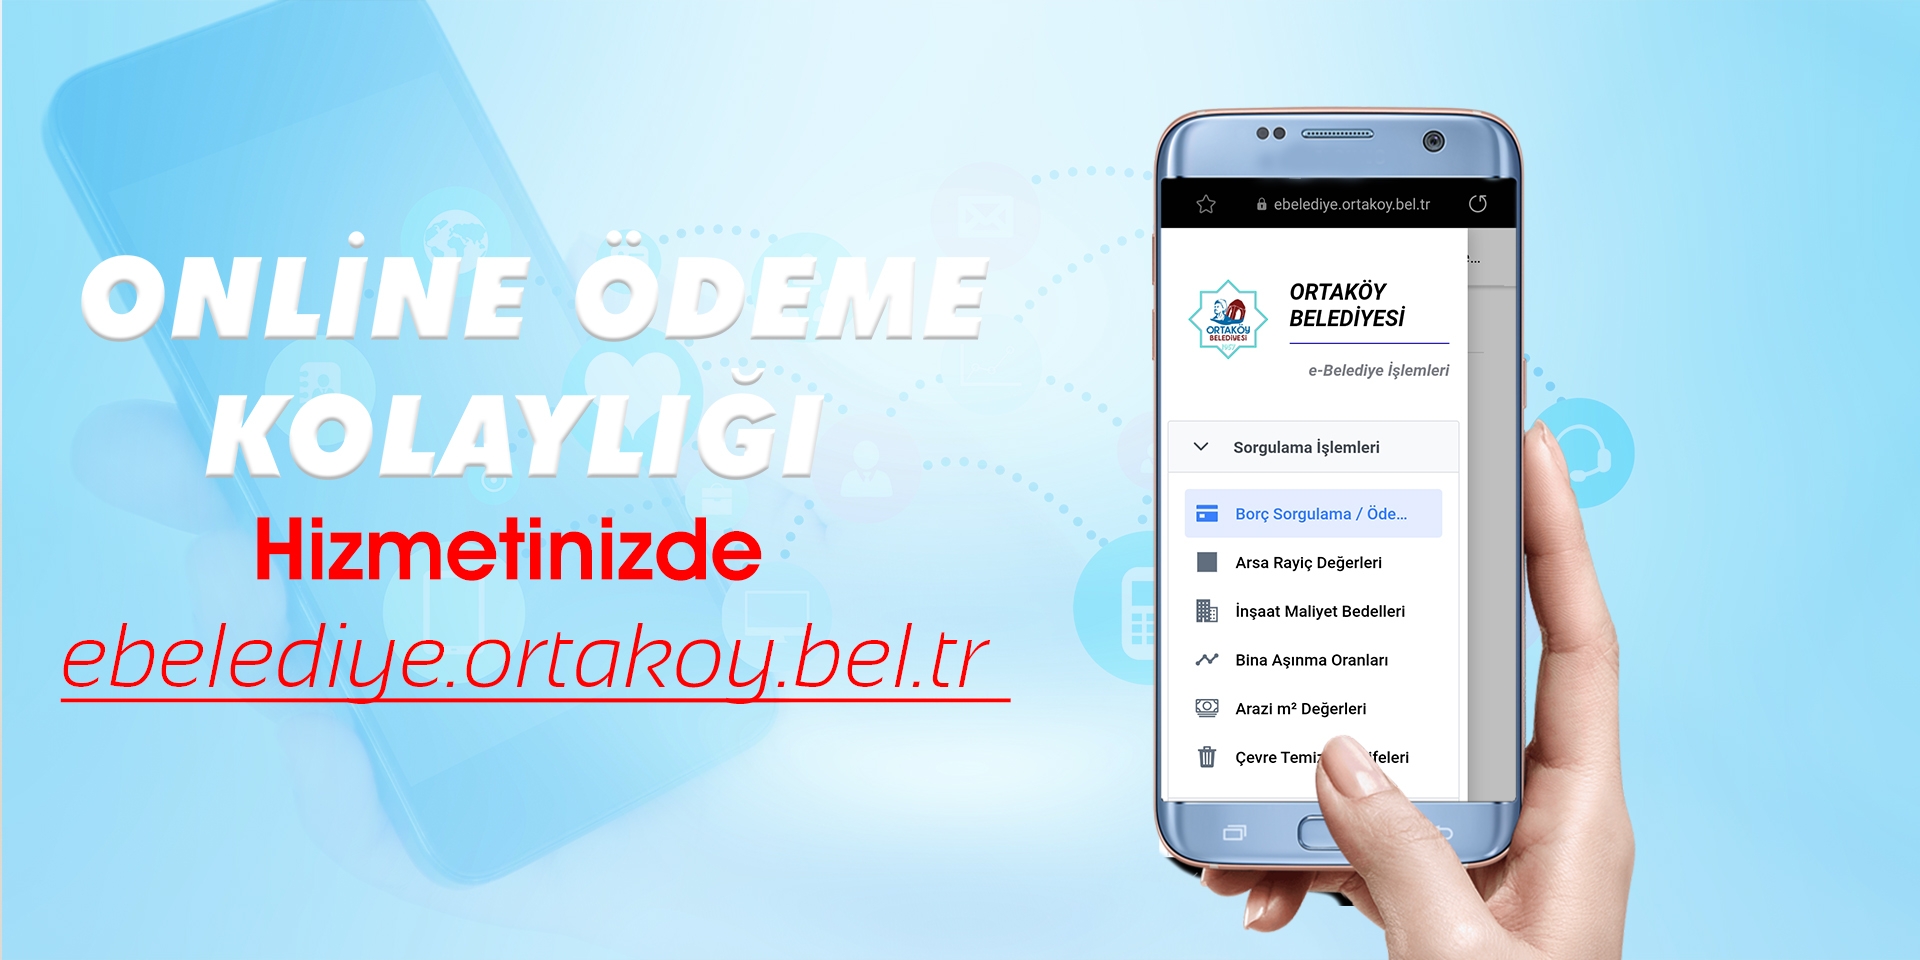 Online Ödeme Hizmetinizde Ortaköy Belediyesi